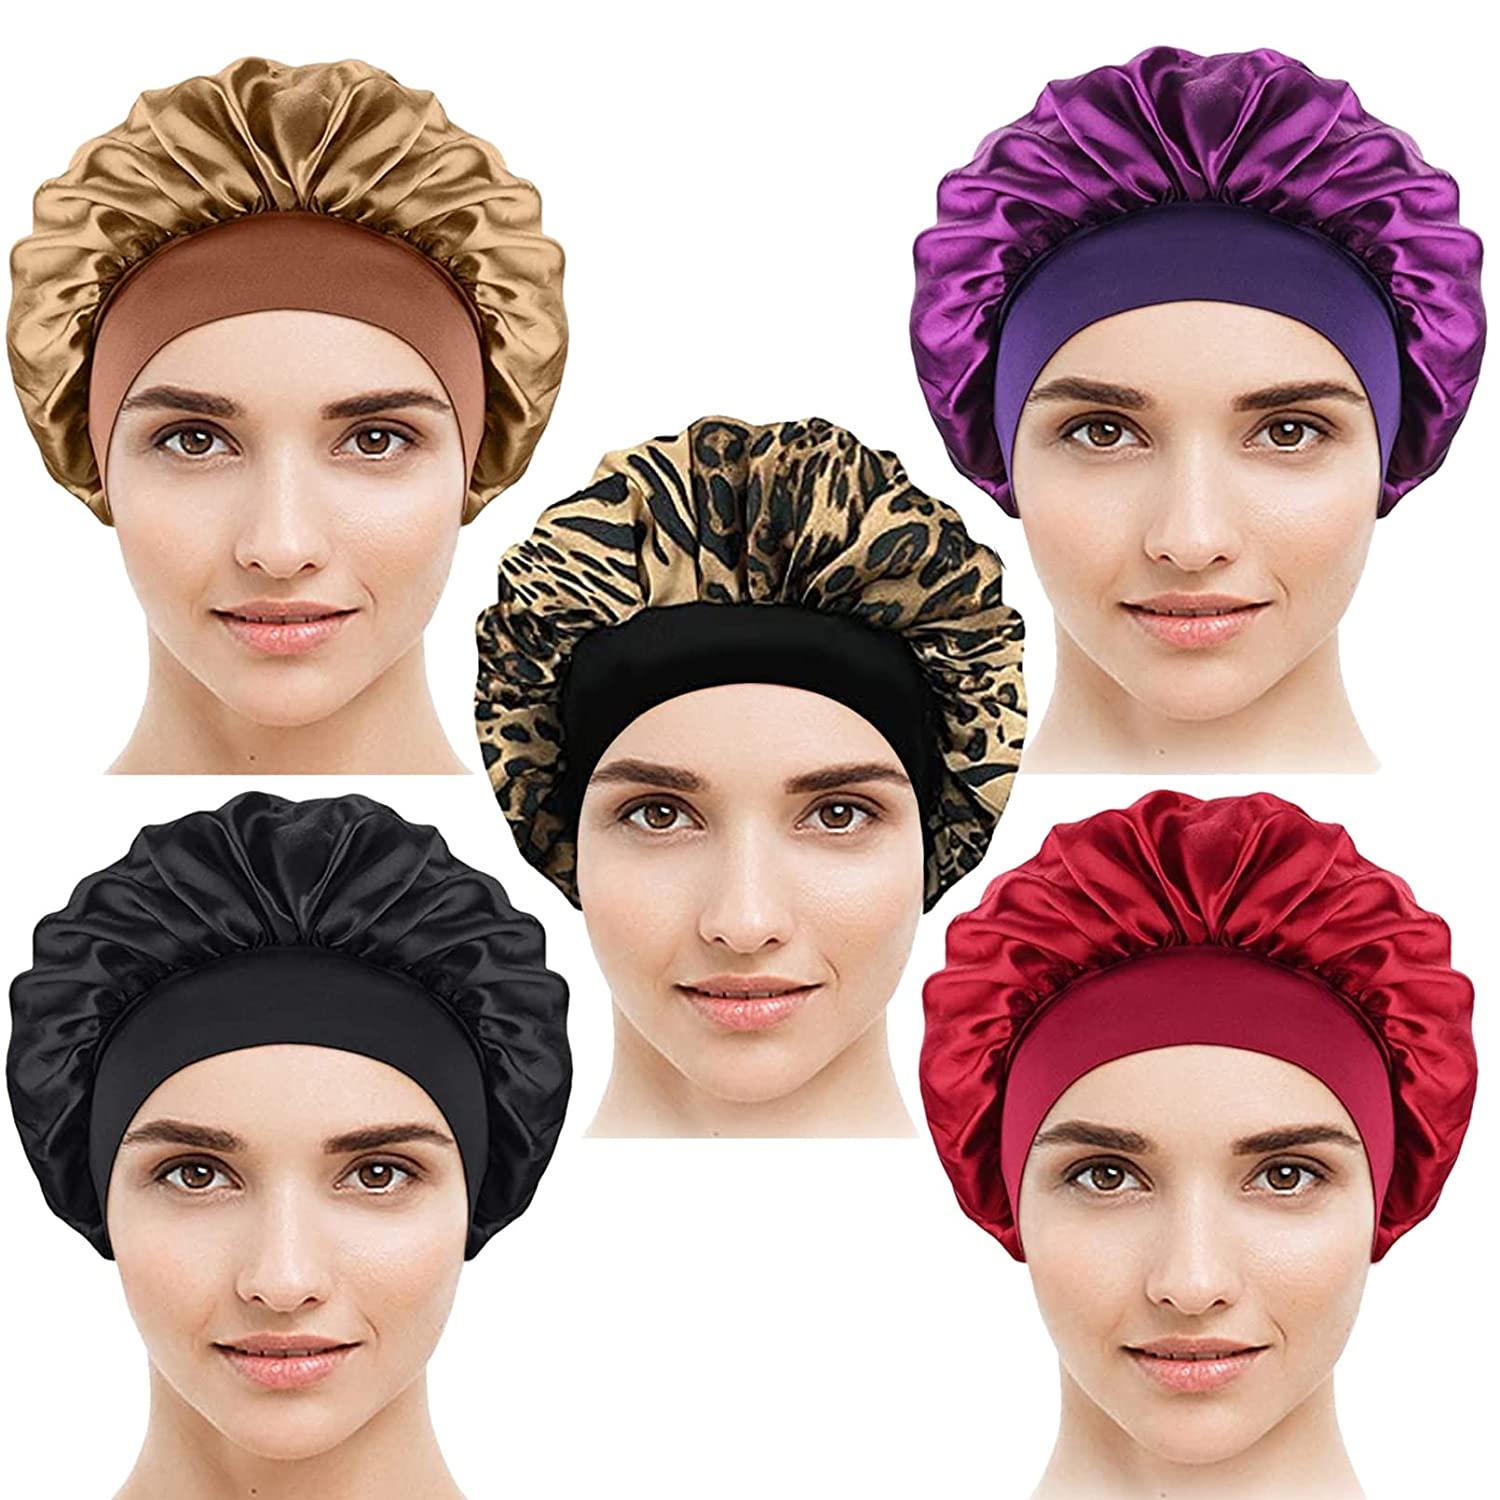 Bonnet en filet pour cheveux au crochet, 2pcs Night Sleeping Bonnet Caps  Women Hairnet Hats for Hair Care (Couleur 2)